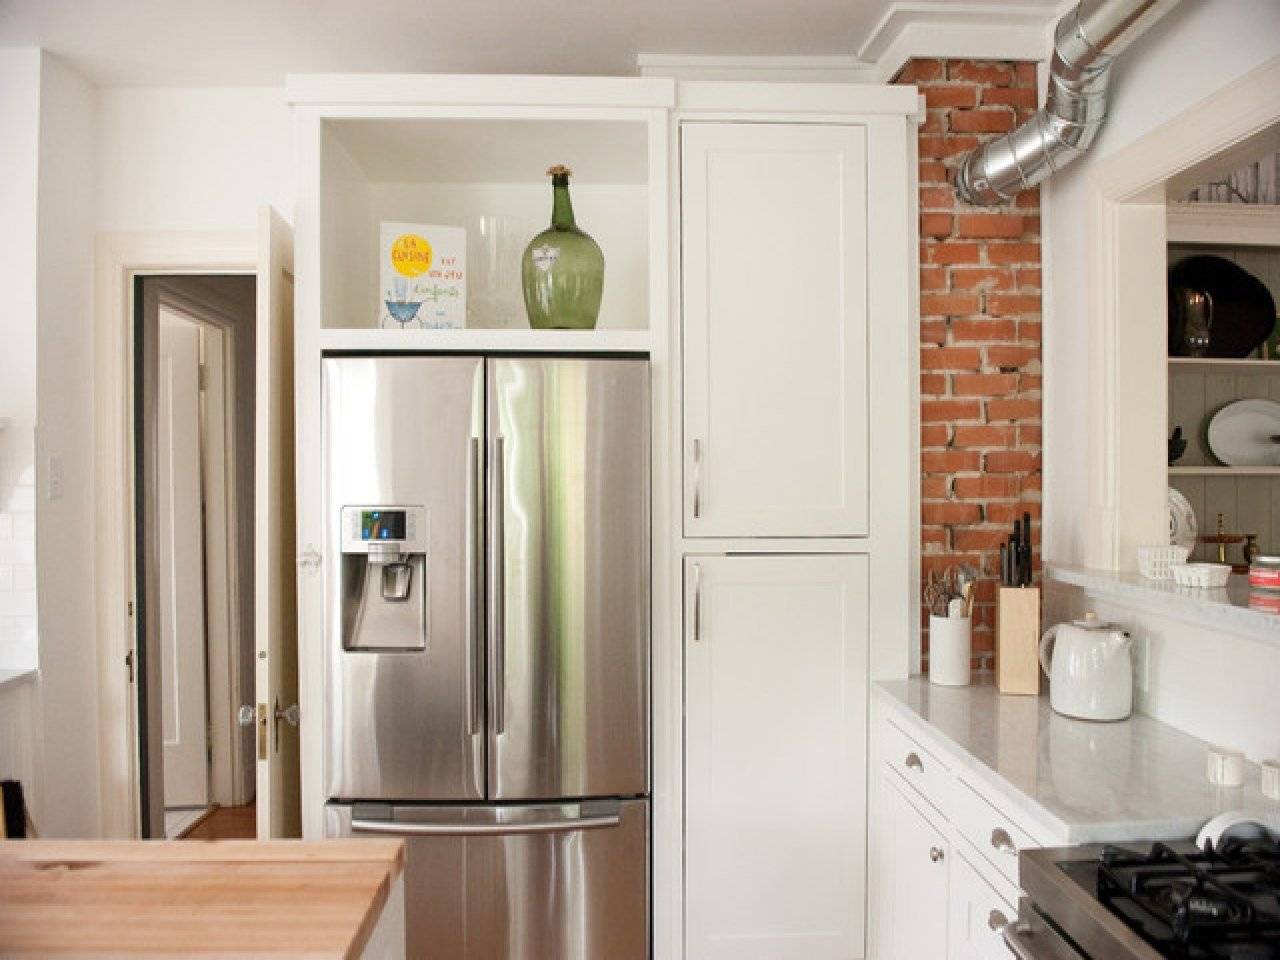 Холодильник на кухне: 100 фото и видео описание правил размещения холодильника